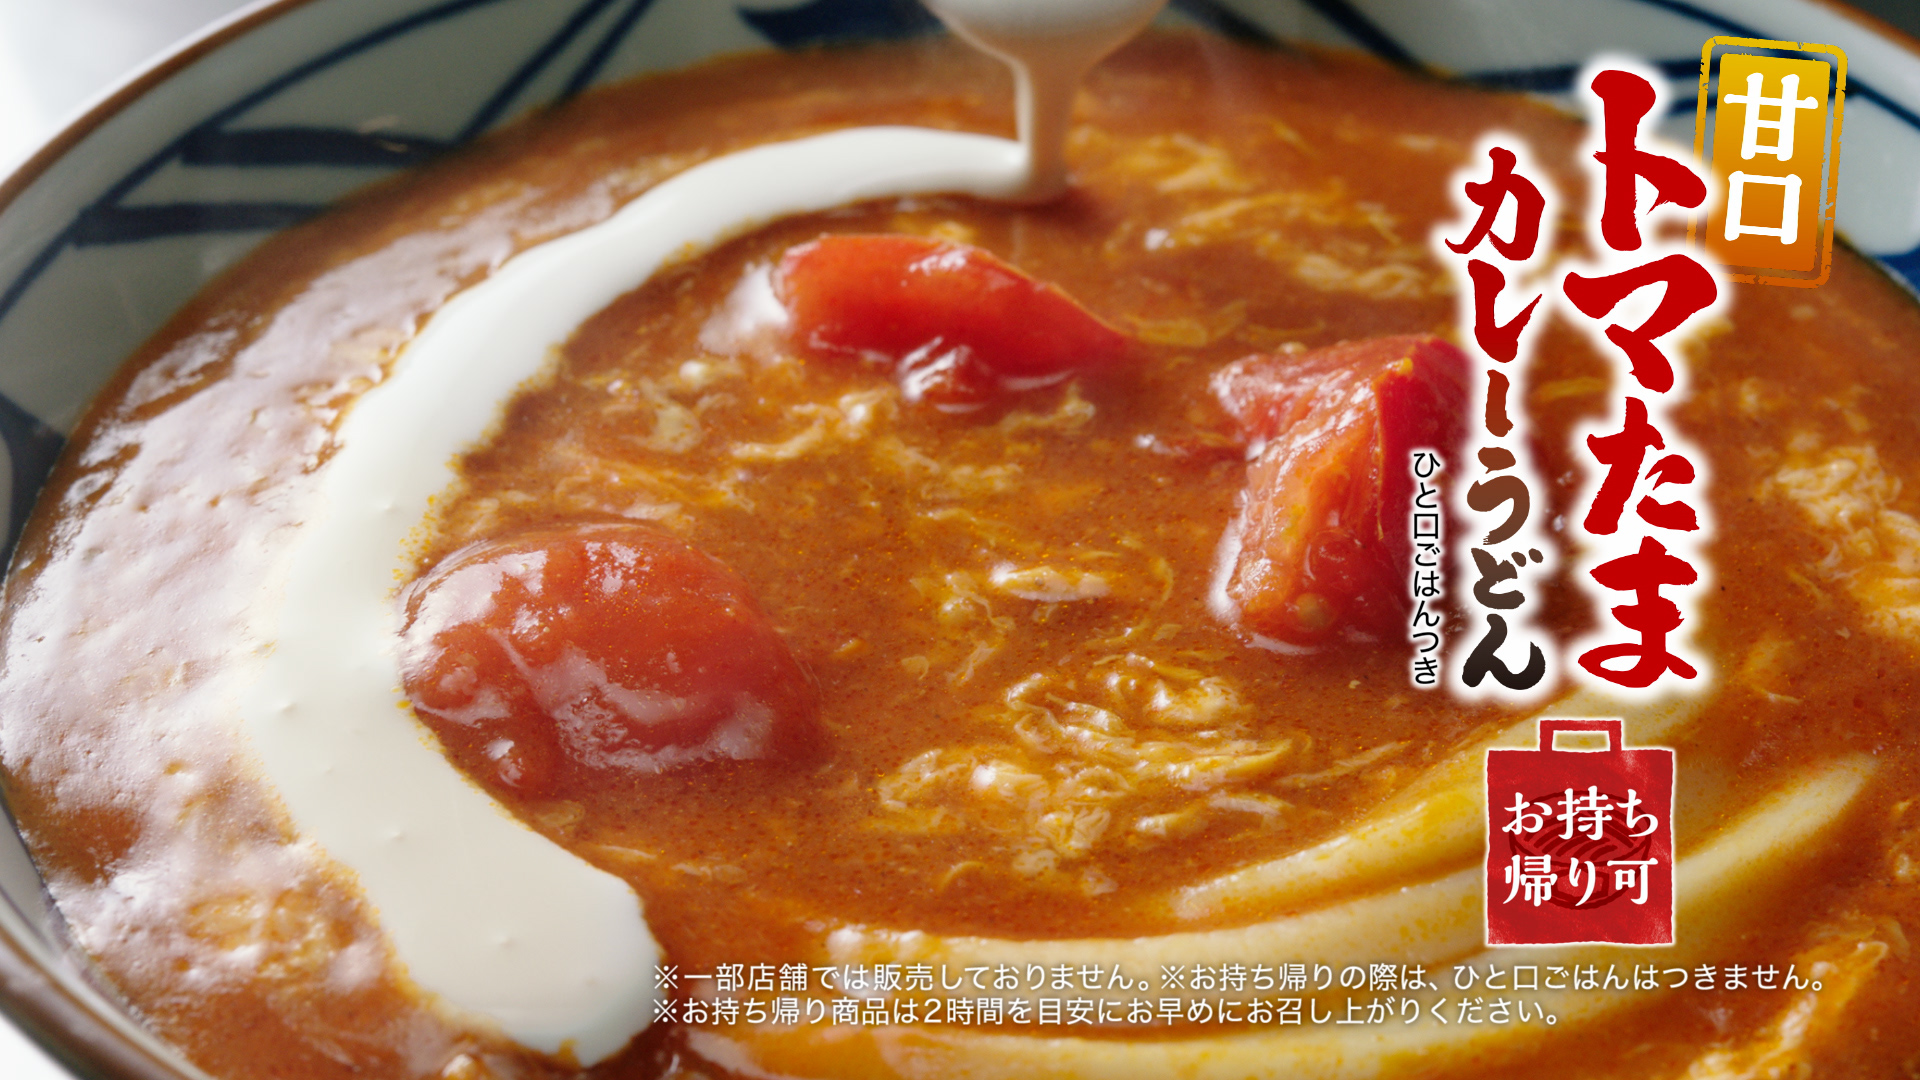 丸亀製麺「甘口トマたまカレーうどん」